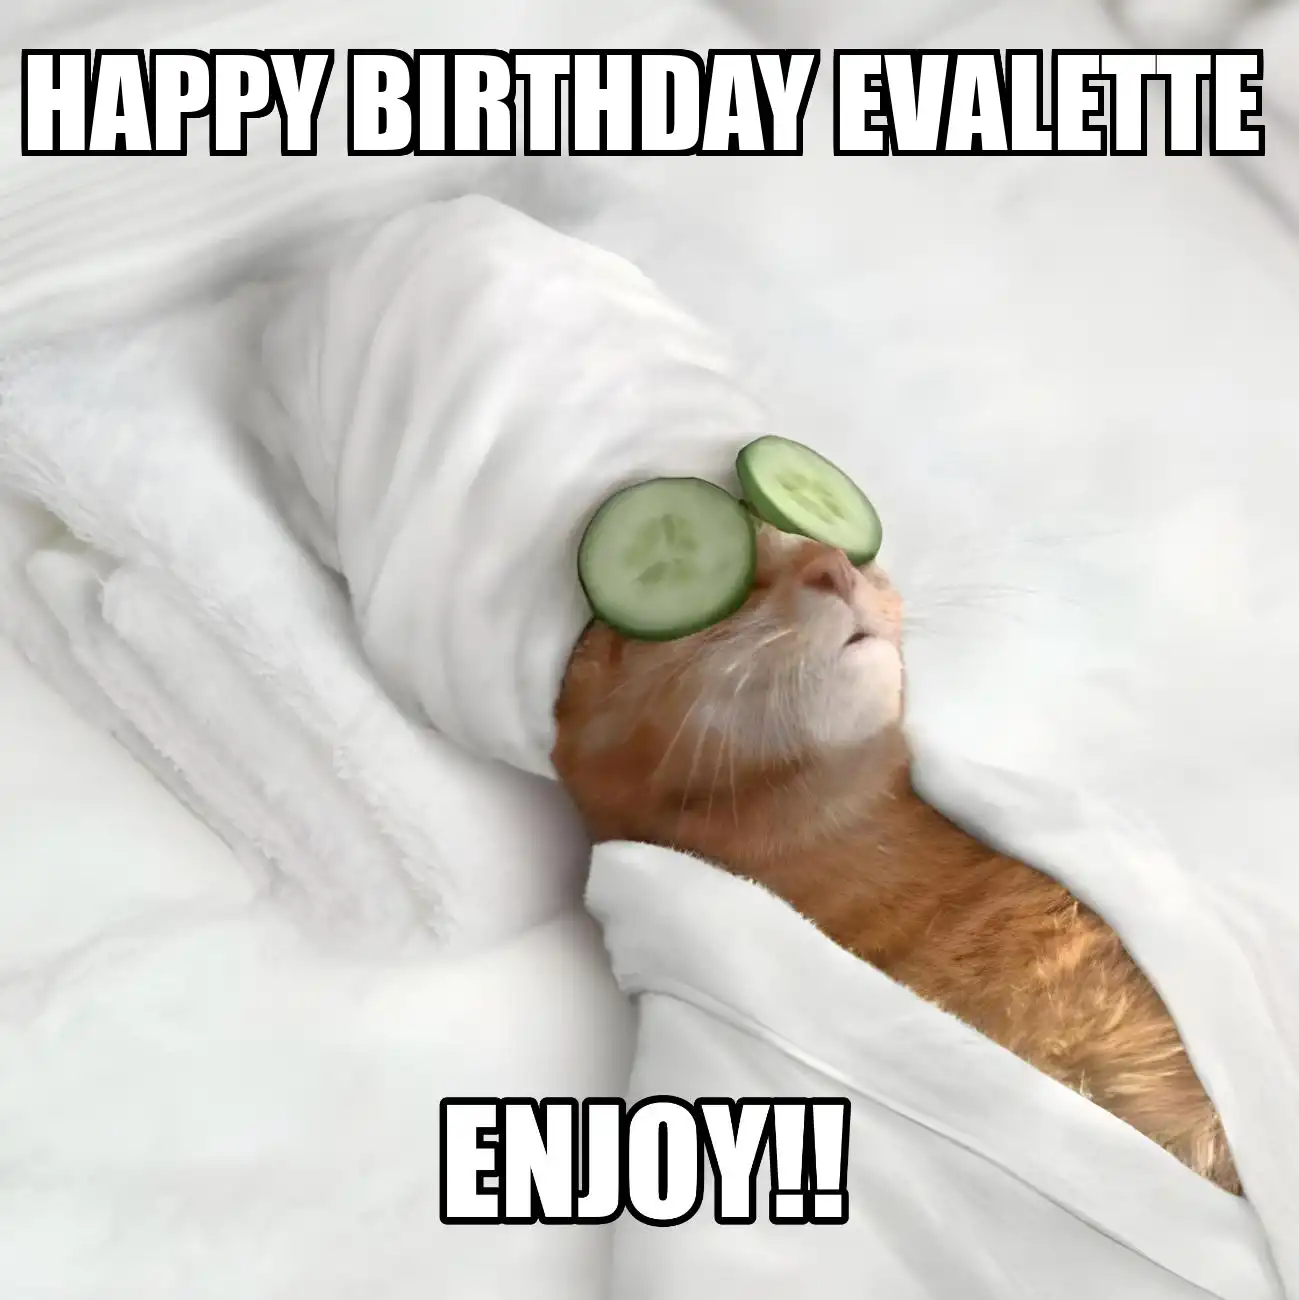 Happy Birthday Evalette Enjoy Cat Meme